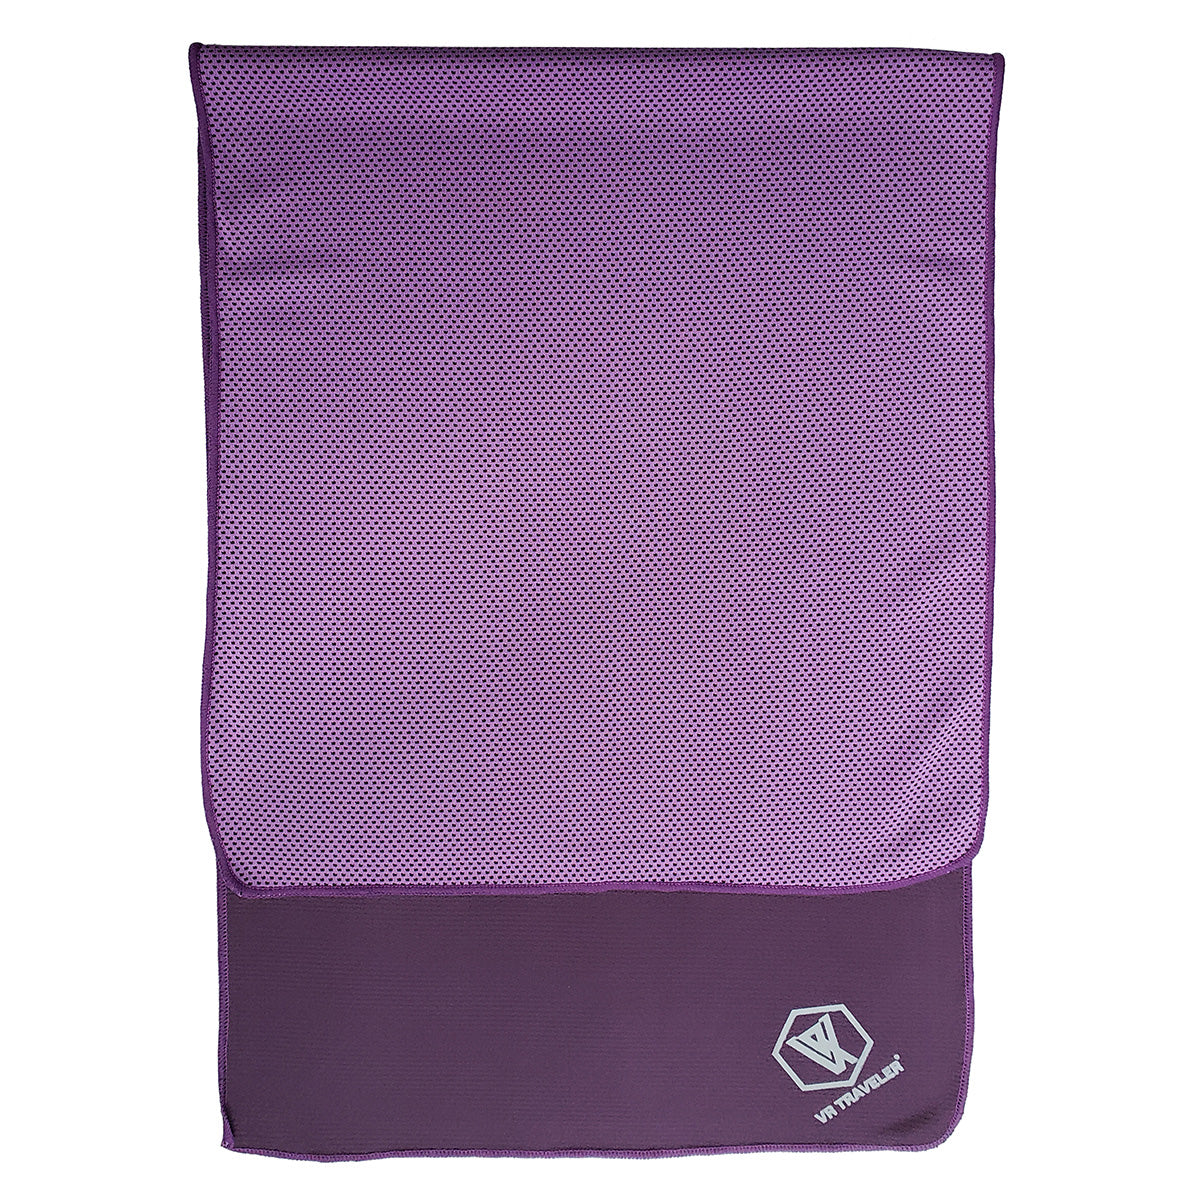 運動冰巾 (薰衣草紫色)